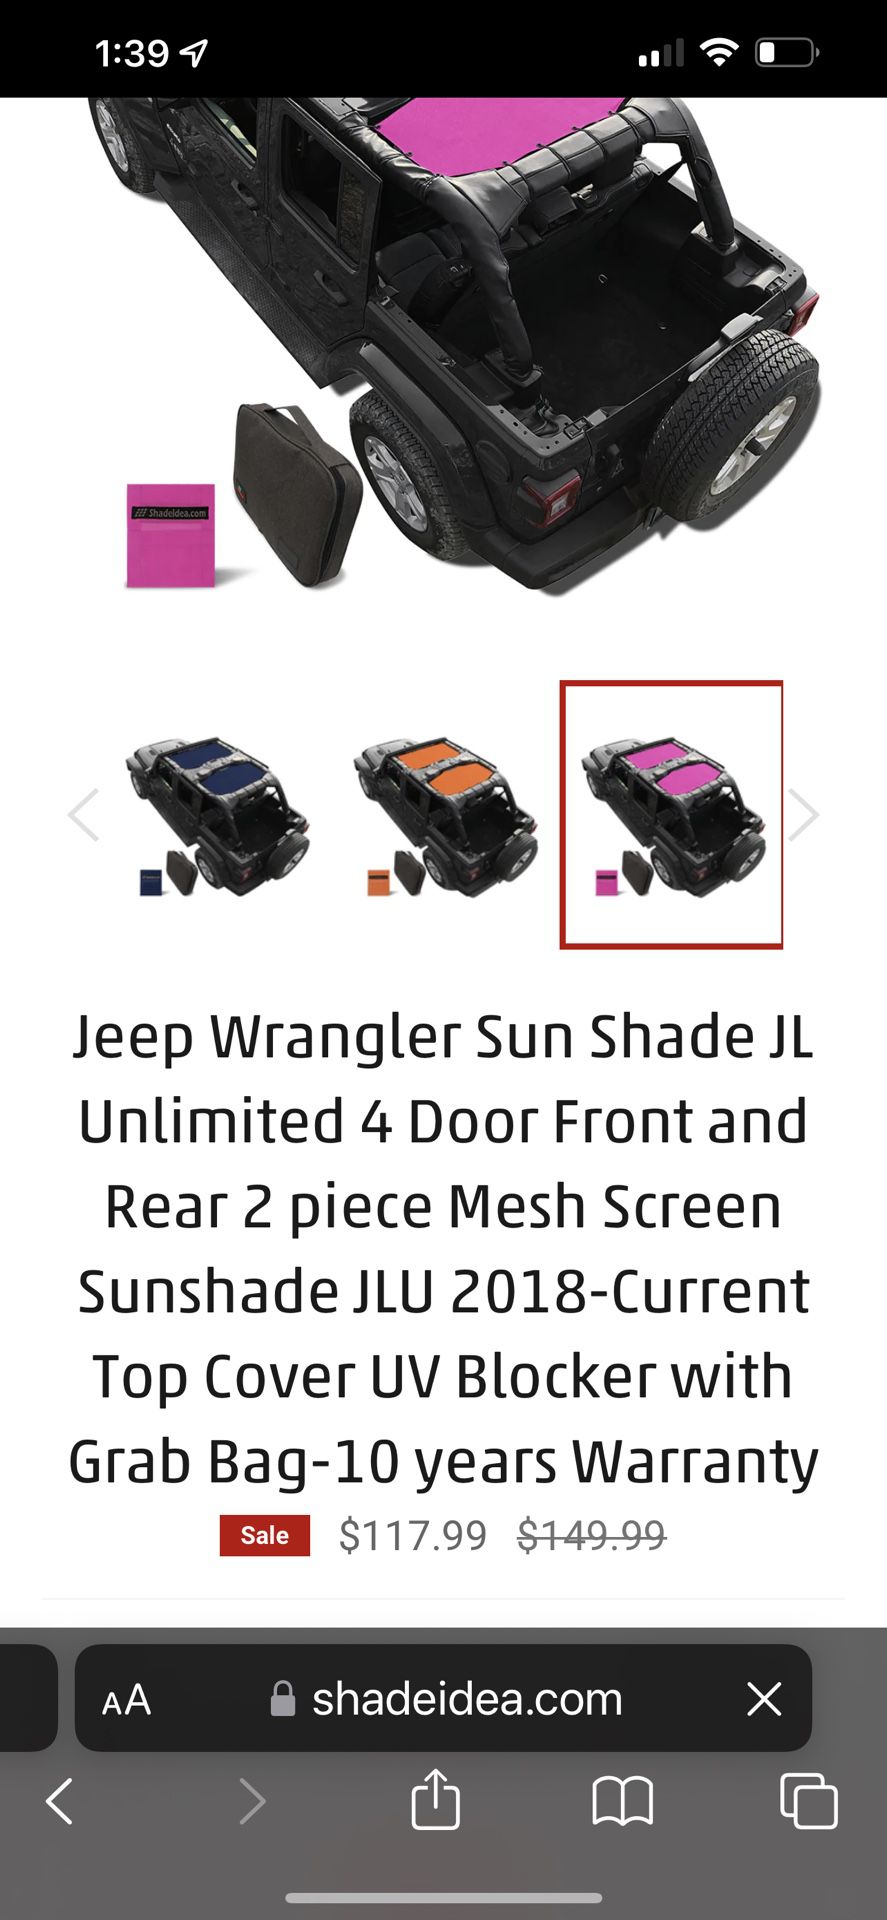 Shade Idea Cover Jeep